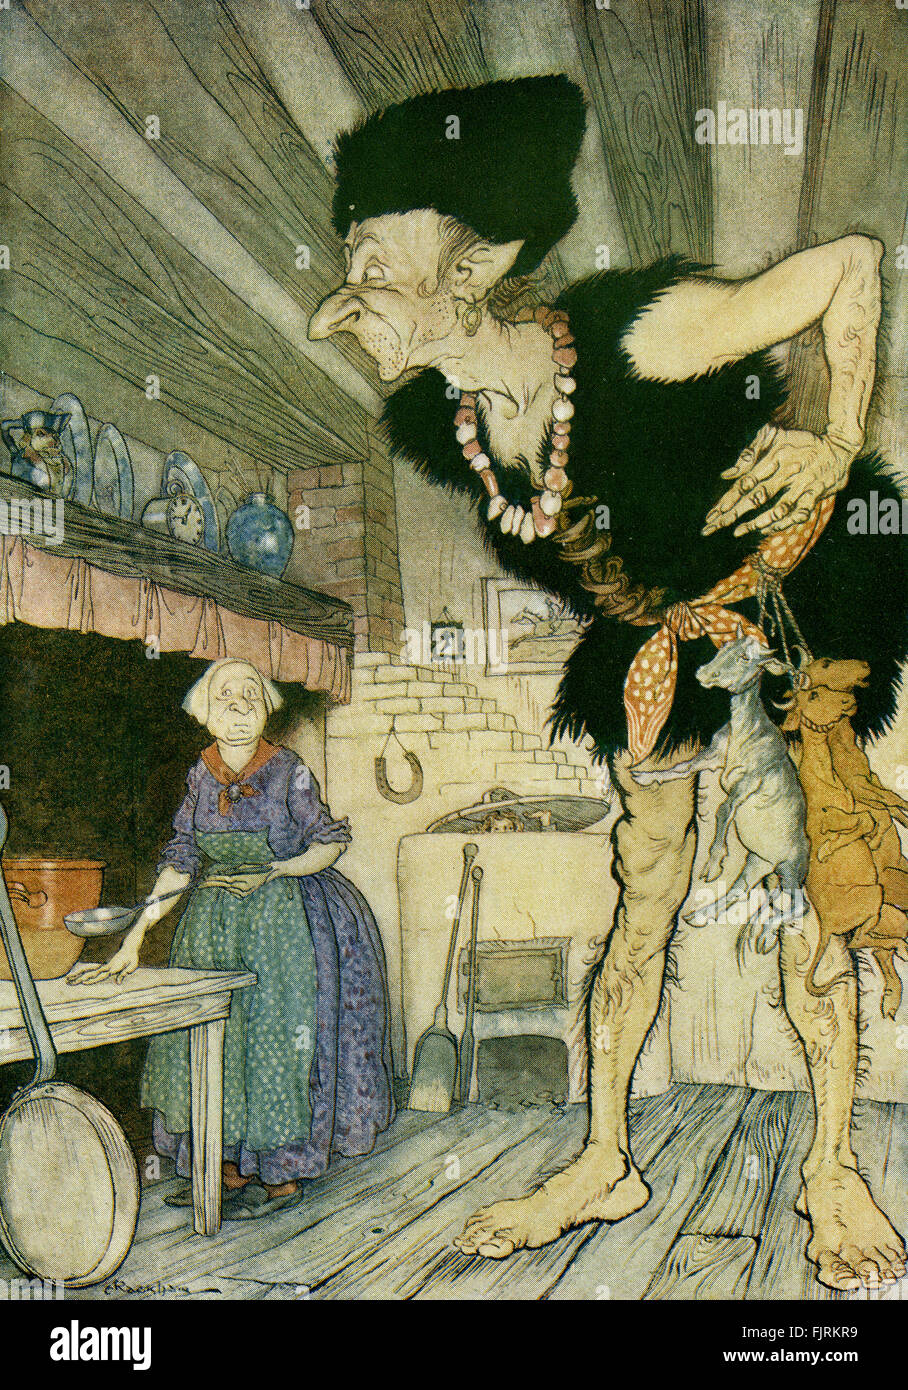 Il martinetto e la Beanstalk, inglese fiaba. Jack Pigoli nell'orco la cucina e vede l'Orco e sua moglie. La didascalia recita: "Fee-fi-fo-fum, ho l'odore del sangue di un inglese". Illustrazione di Arthur Rackham (1867 - 1939) Foto Stock